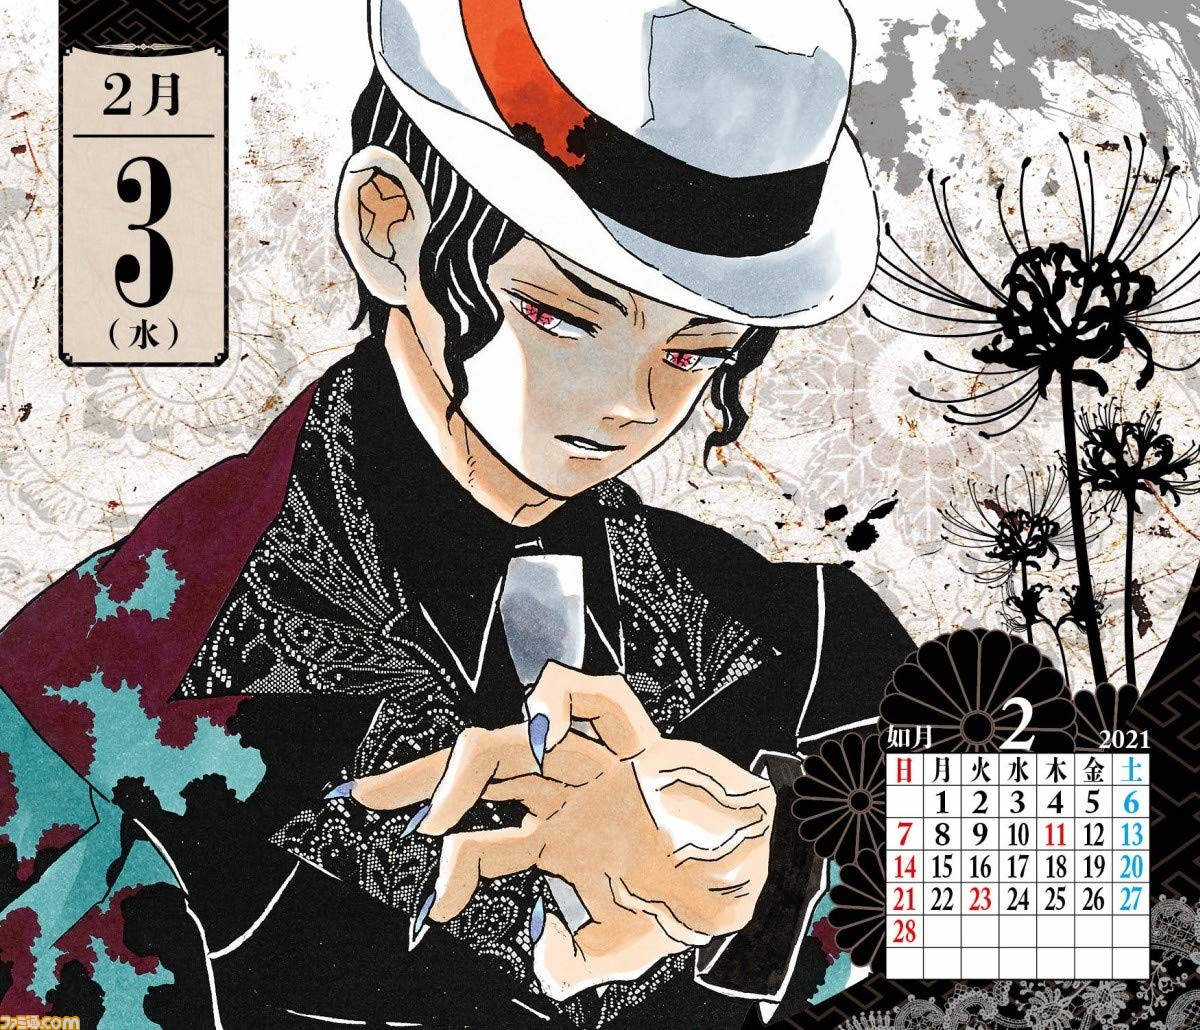 鬼滅の刃 日めくりカレンダー2021